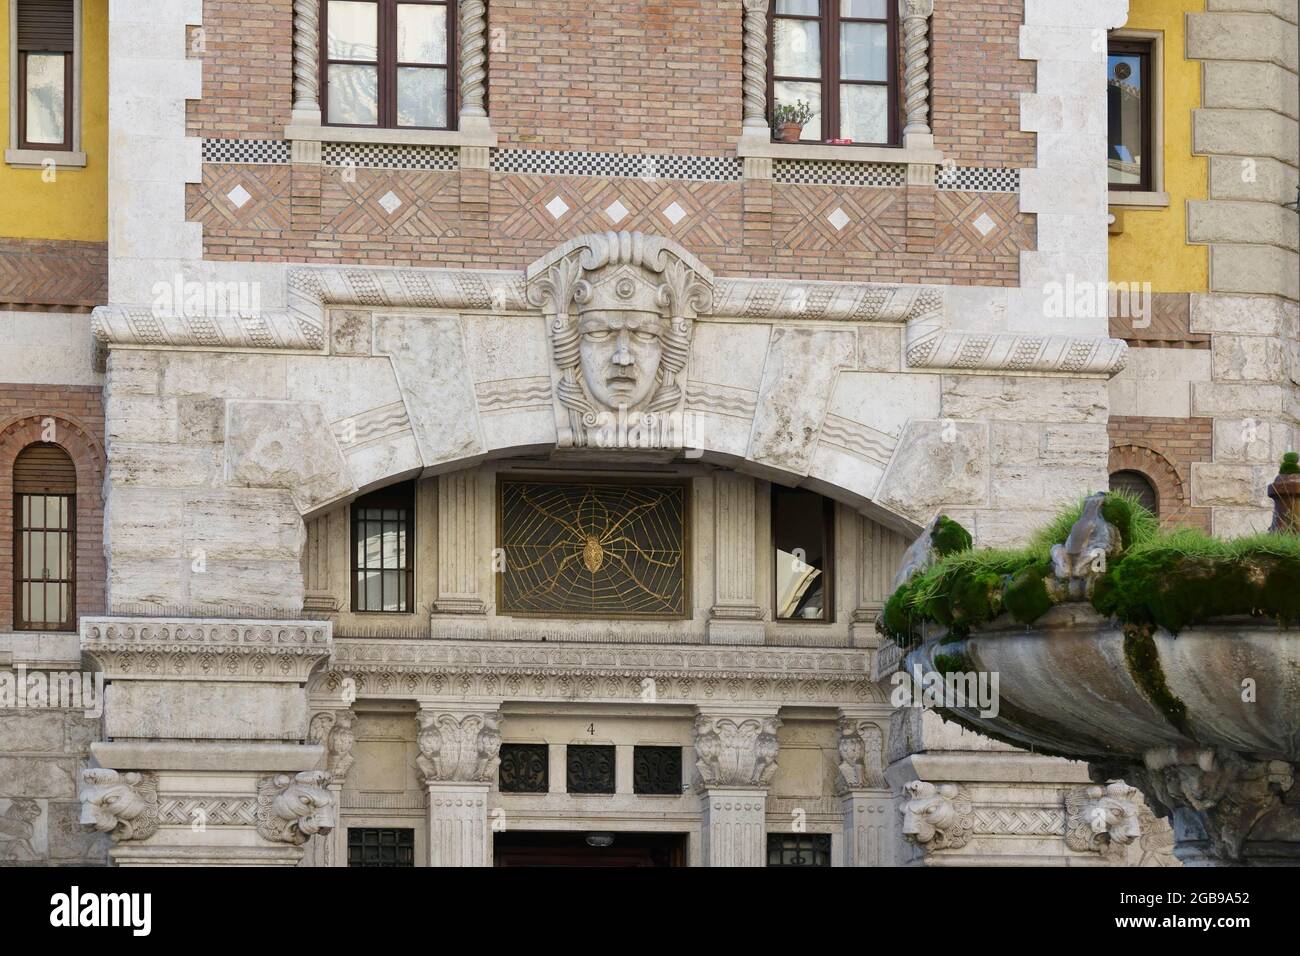 Palazzo del Ragno Spider Palace in Piazza Mincio Mincio nel quartiere Coppede, in stile Art Nouveau, costruito dall'architetto Gino Foto Stock